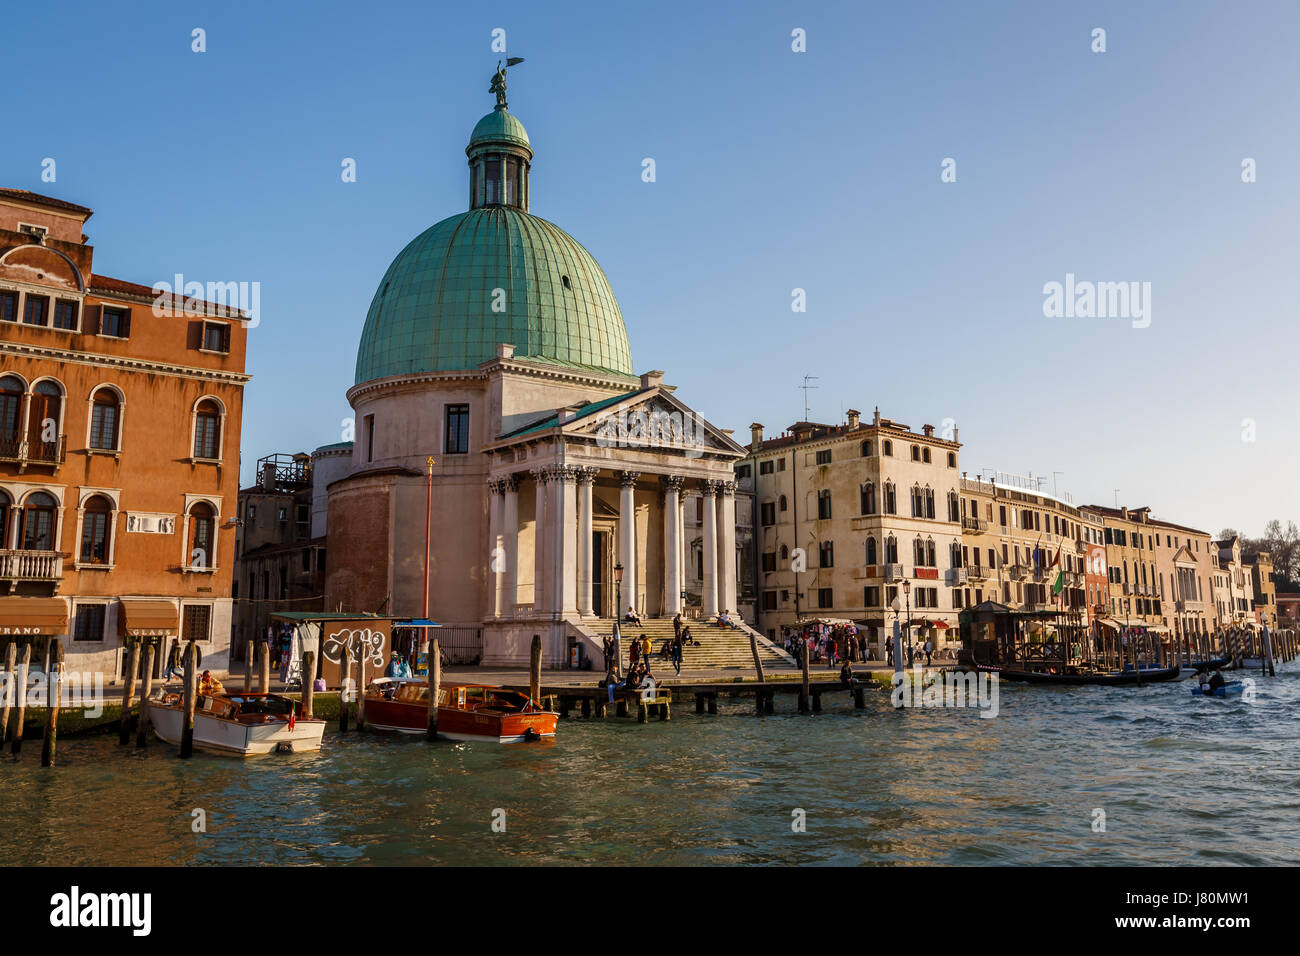 Venise, Italie - 7 mars : une vue de l'Eglise de San Simeone Piccolo et le Grand Canal le 7 mars 2014 à Venise, Italie. Face à l'railroad termin Banque D'Images